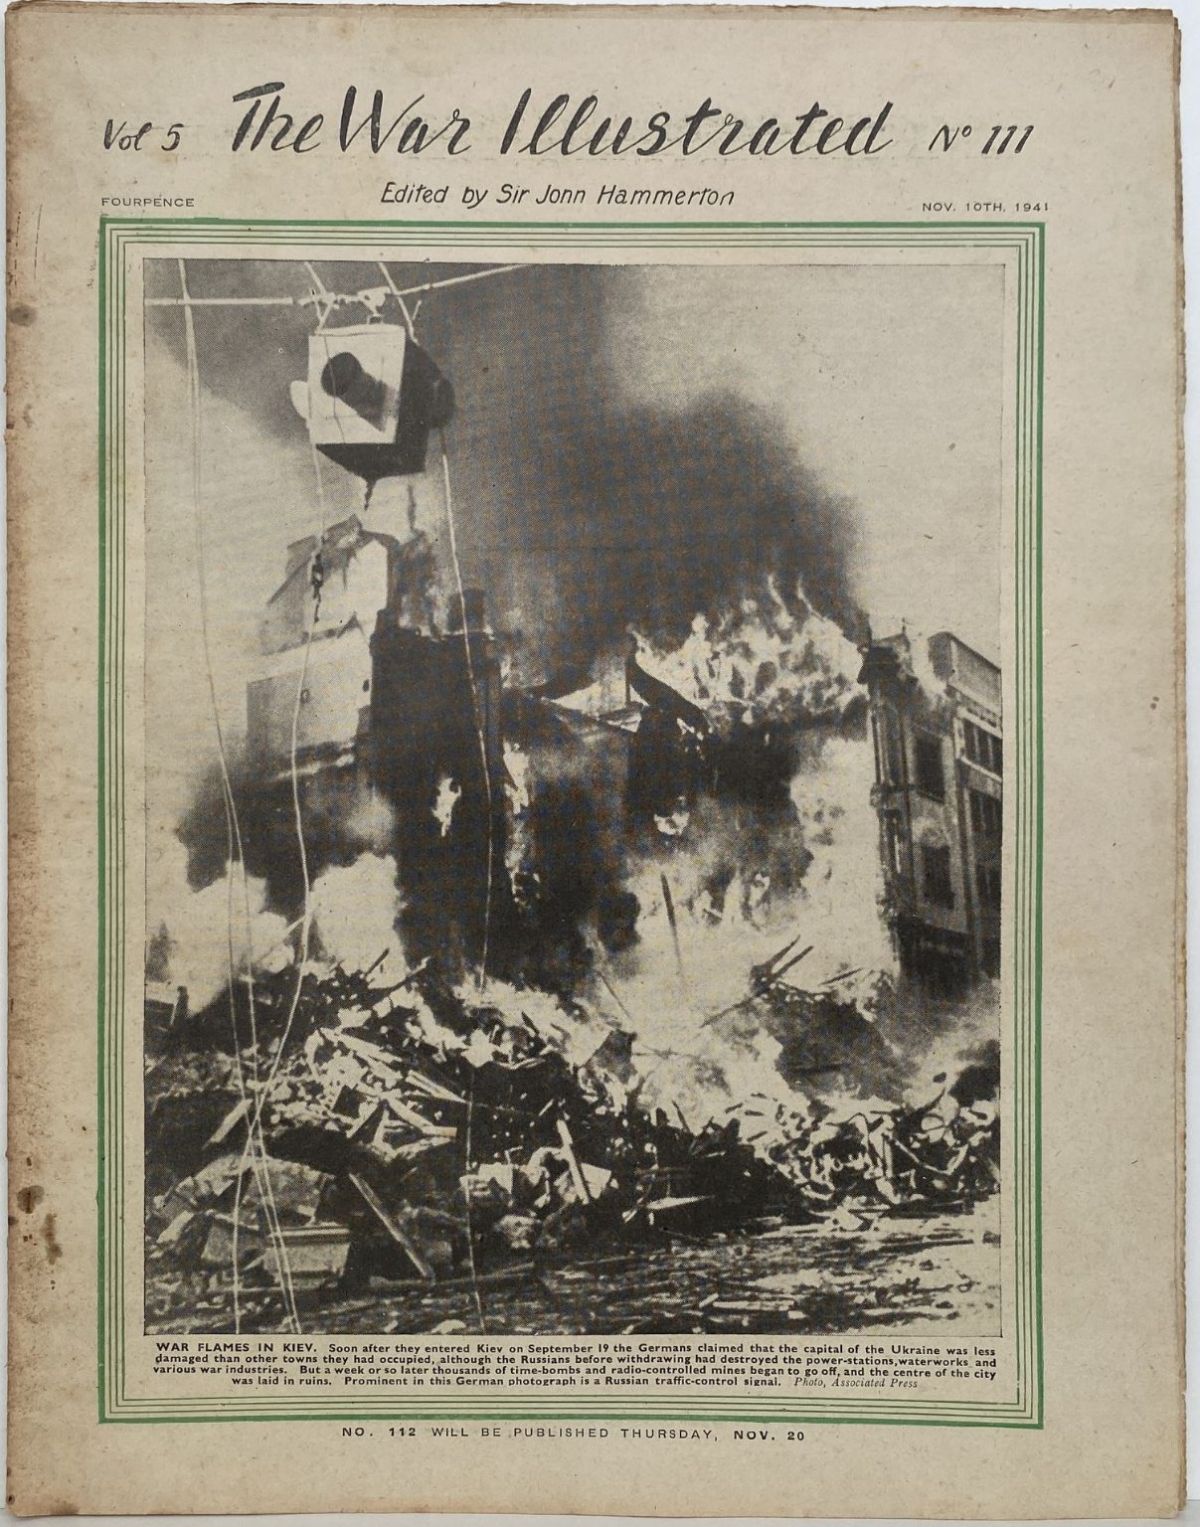 THE WAR ILLUSTRATED - Vol 5, No 111, 10th Nov 1941